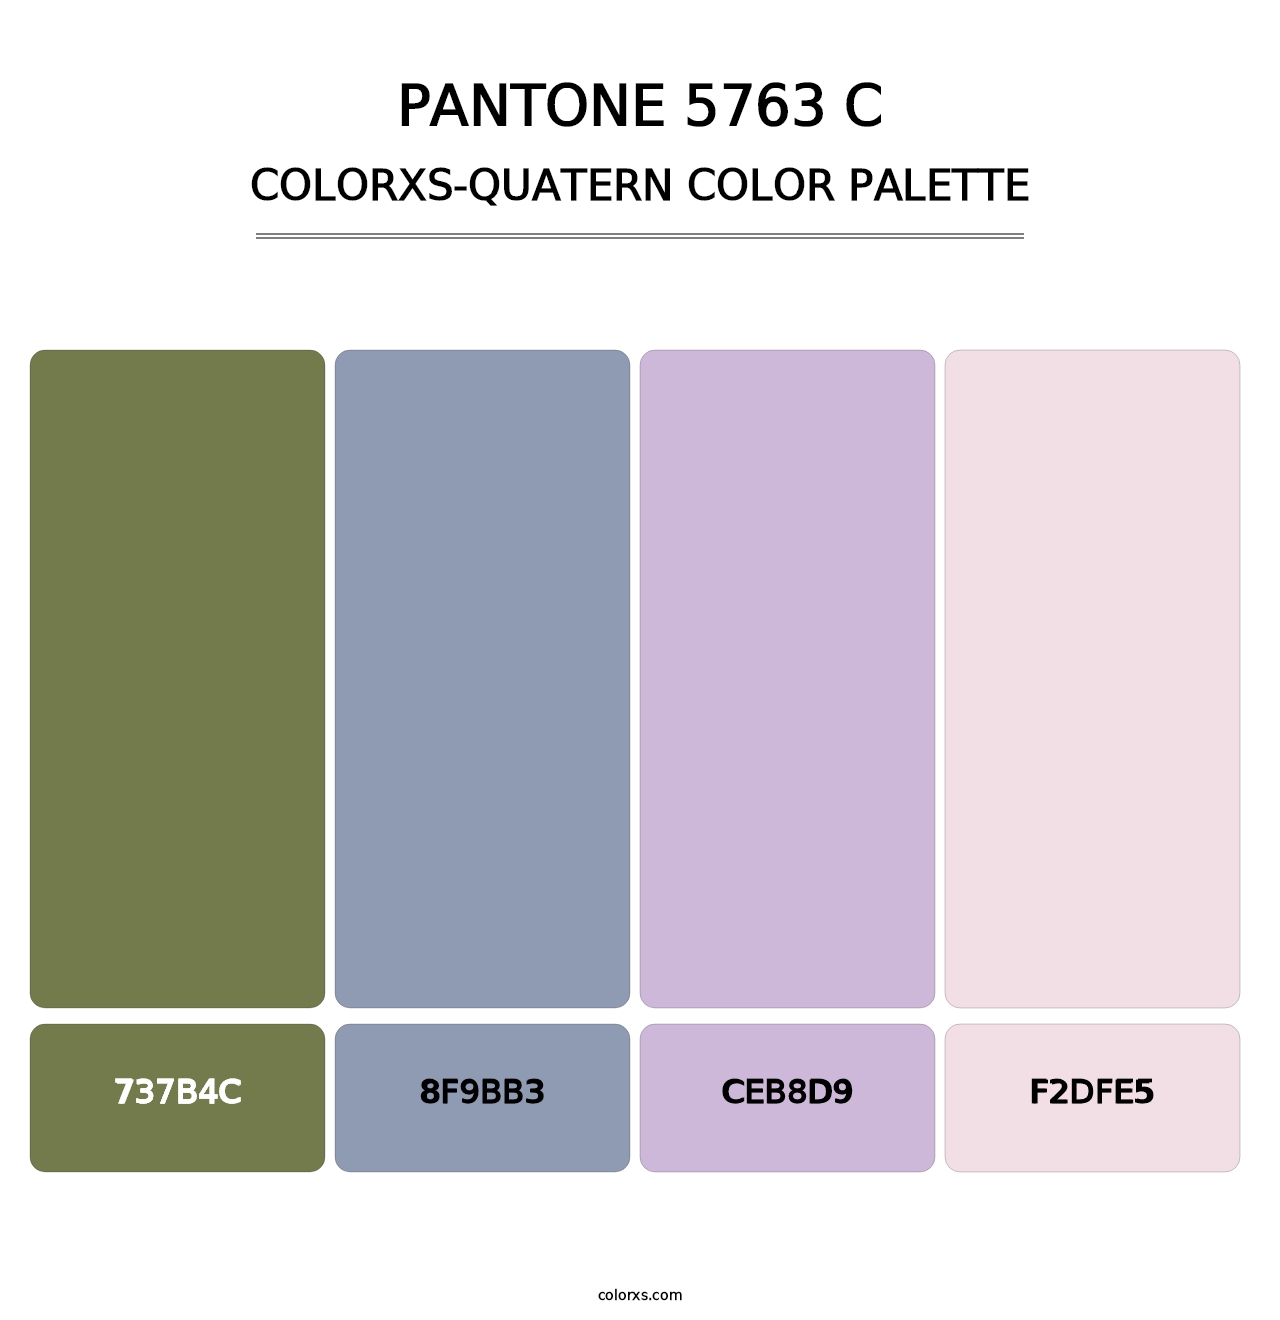 PANTONE 5763 C - Colorxs Quatern Palette